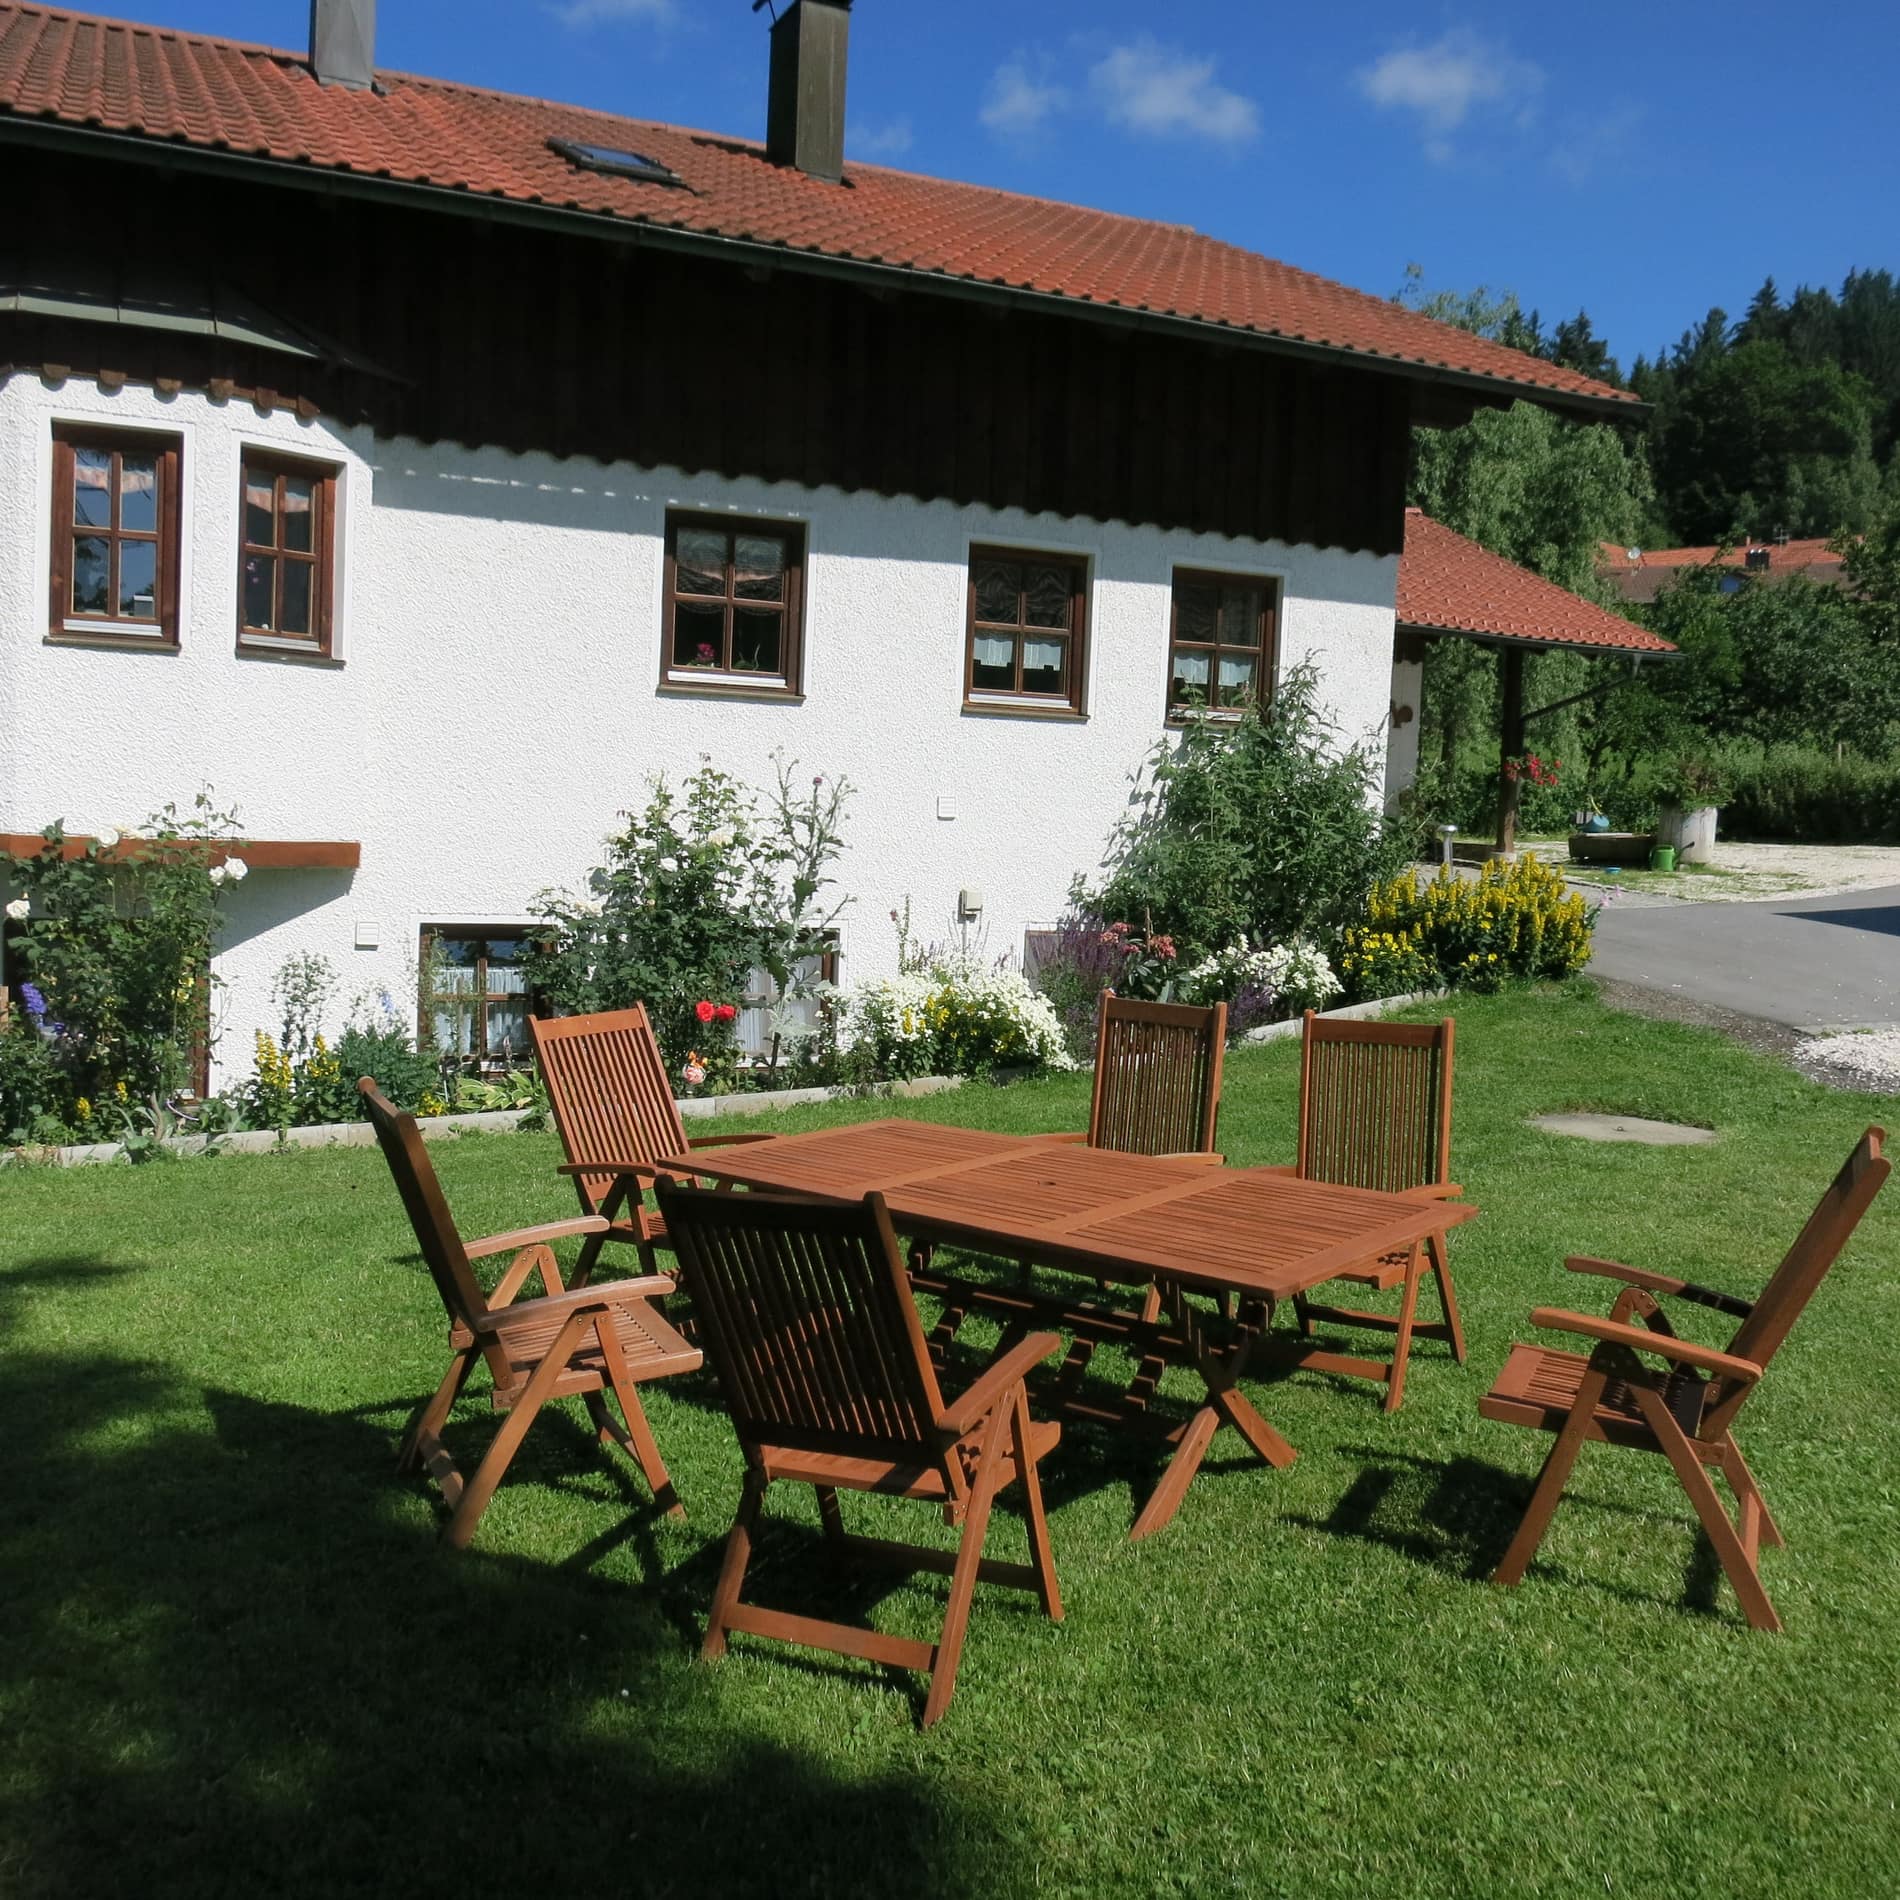 Ferienwohnung im Bayerischen Wald auf dem Bauernhof mit Sitzgelegenheit im Garten